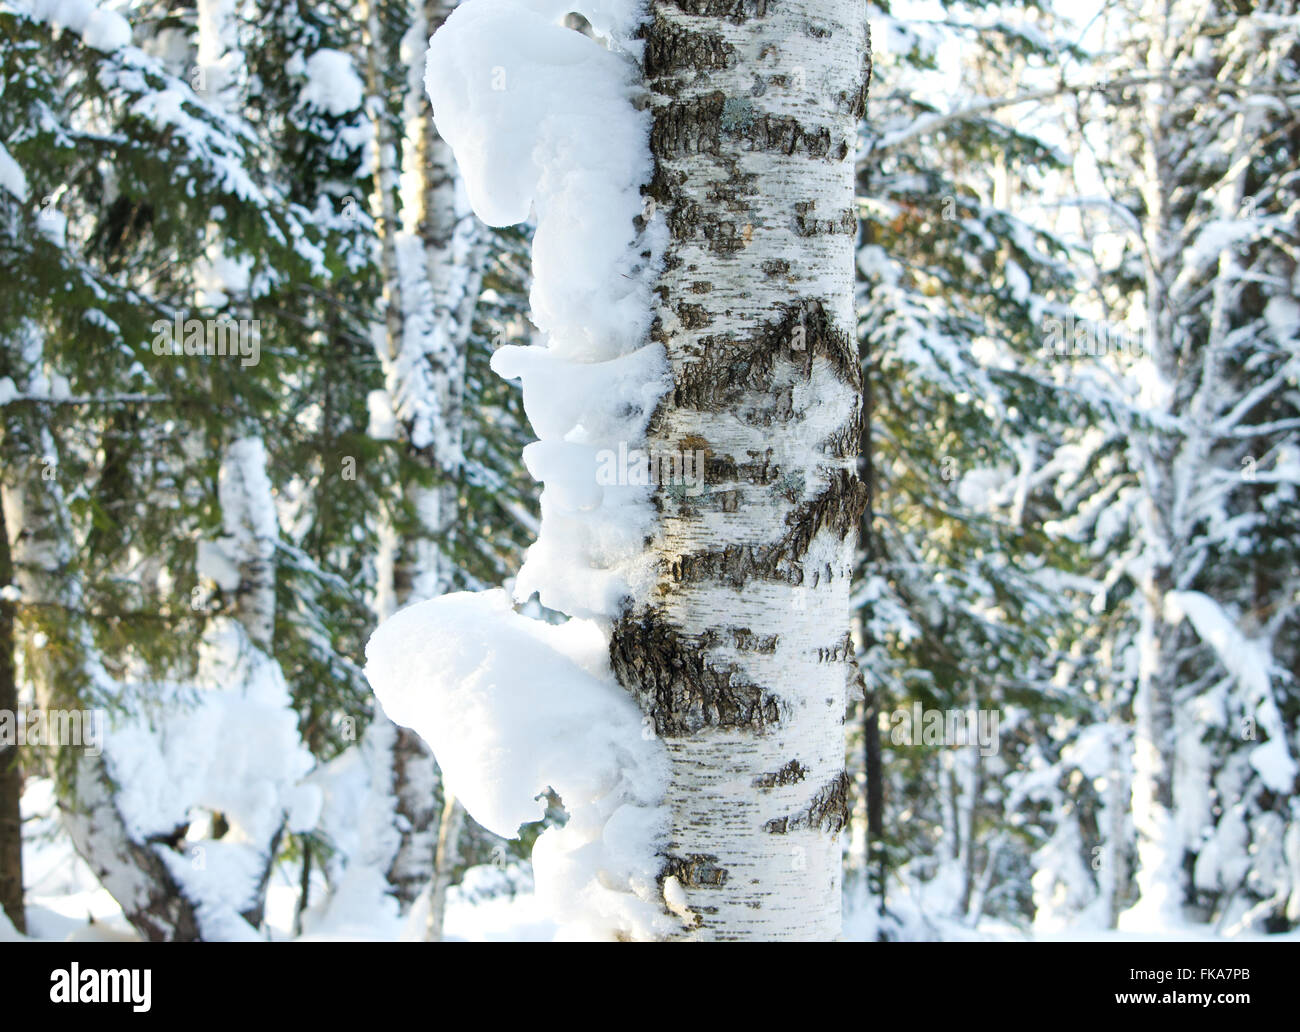 Stamm einer Birke im Schnee, Birke, eine Landschaft, eine Saison, eine Schneekappe, einer Schneewehe, einen Baum, einen Stamm, gegen Bäume, Rinde, Schnee Stockfoto